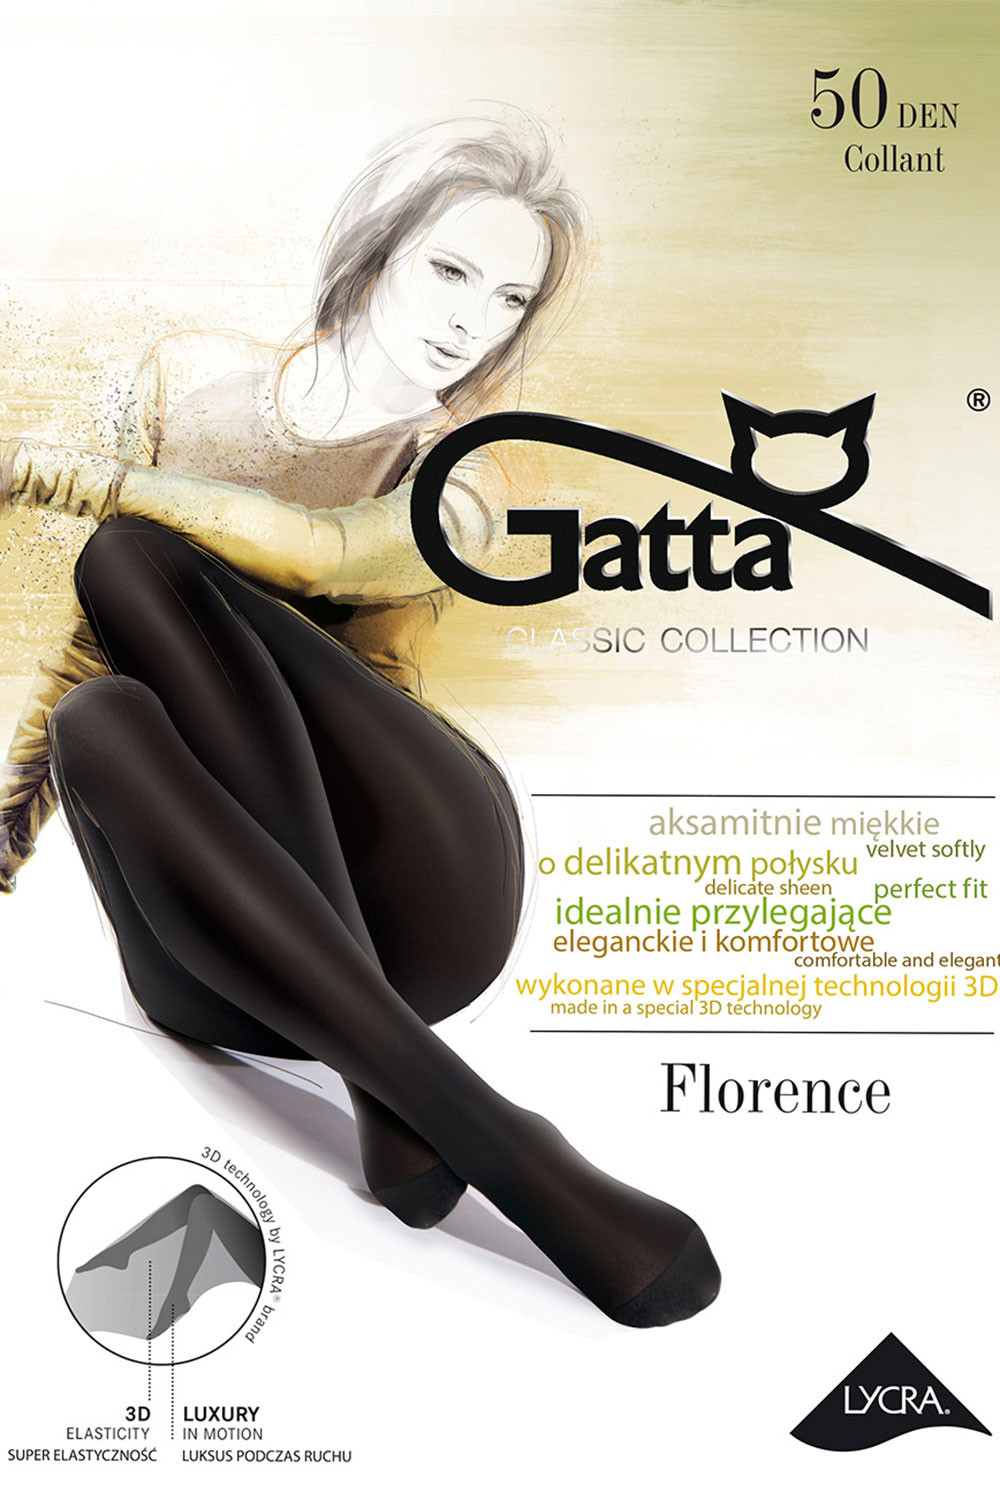 Punčochové kalhoty FLorence 50 černá -Gatta 3-M